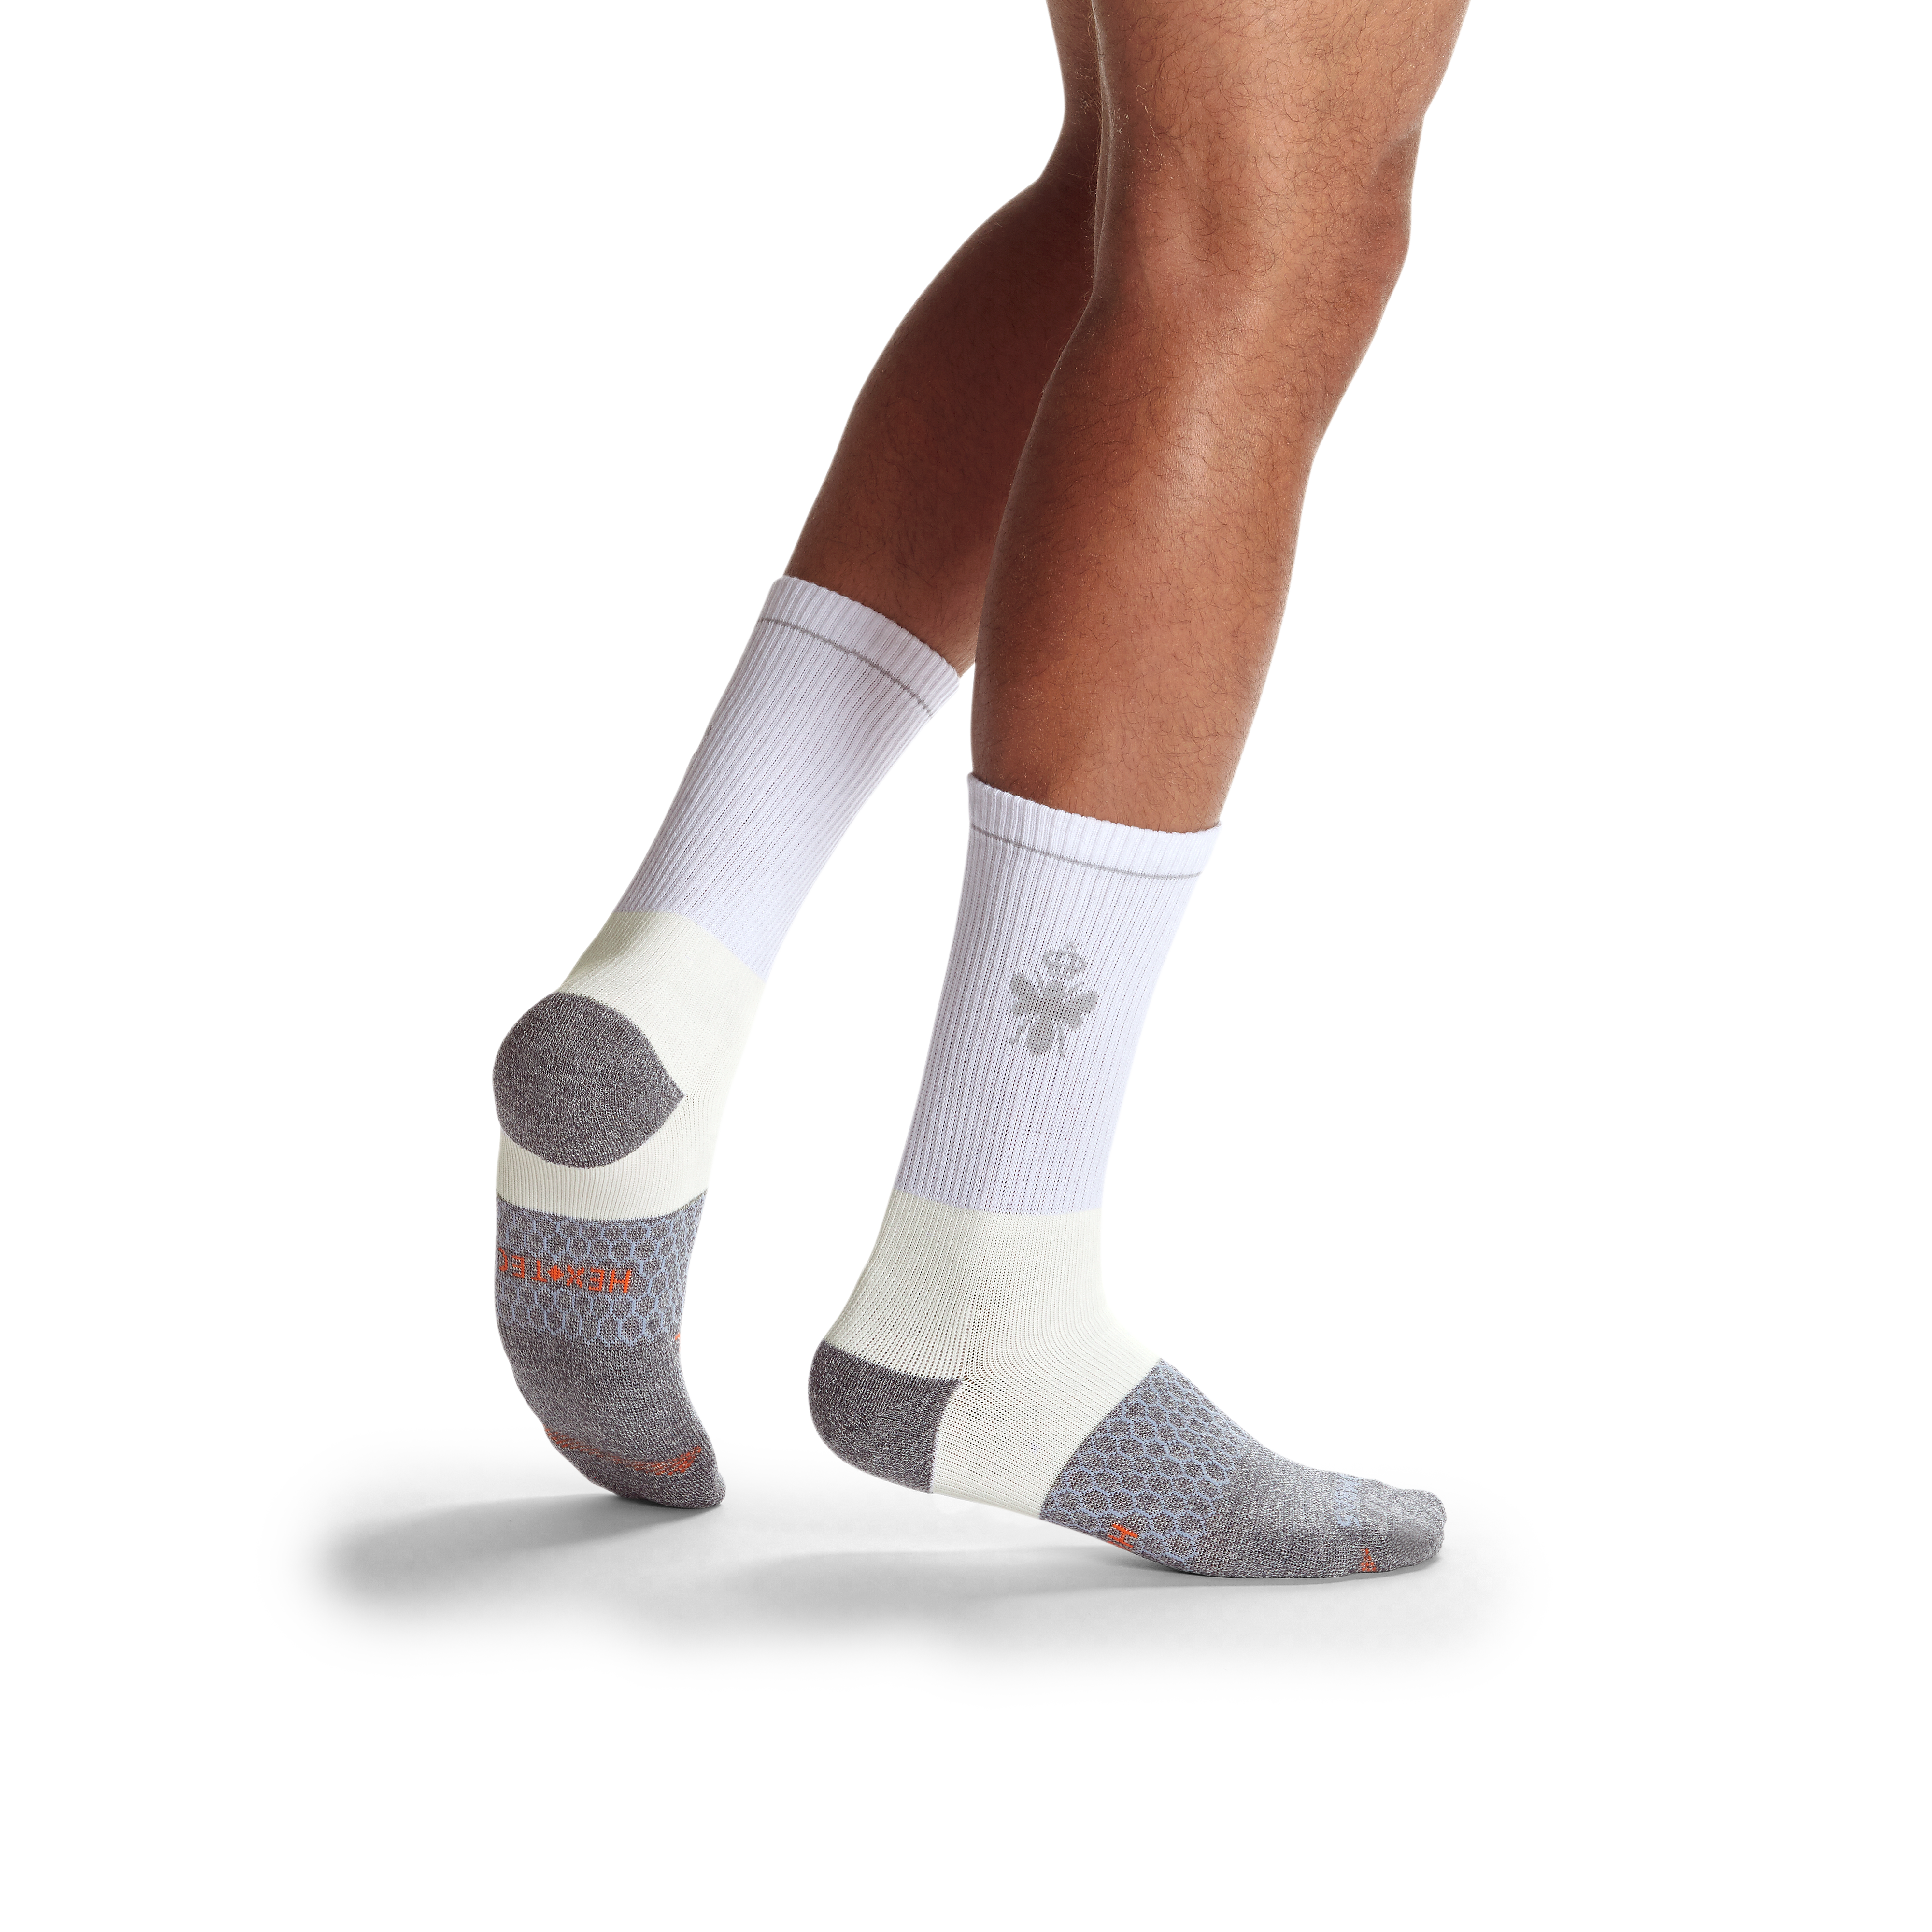 Men Short Socks 3 Pack - BM233 